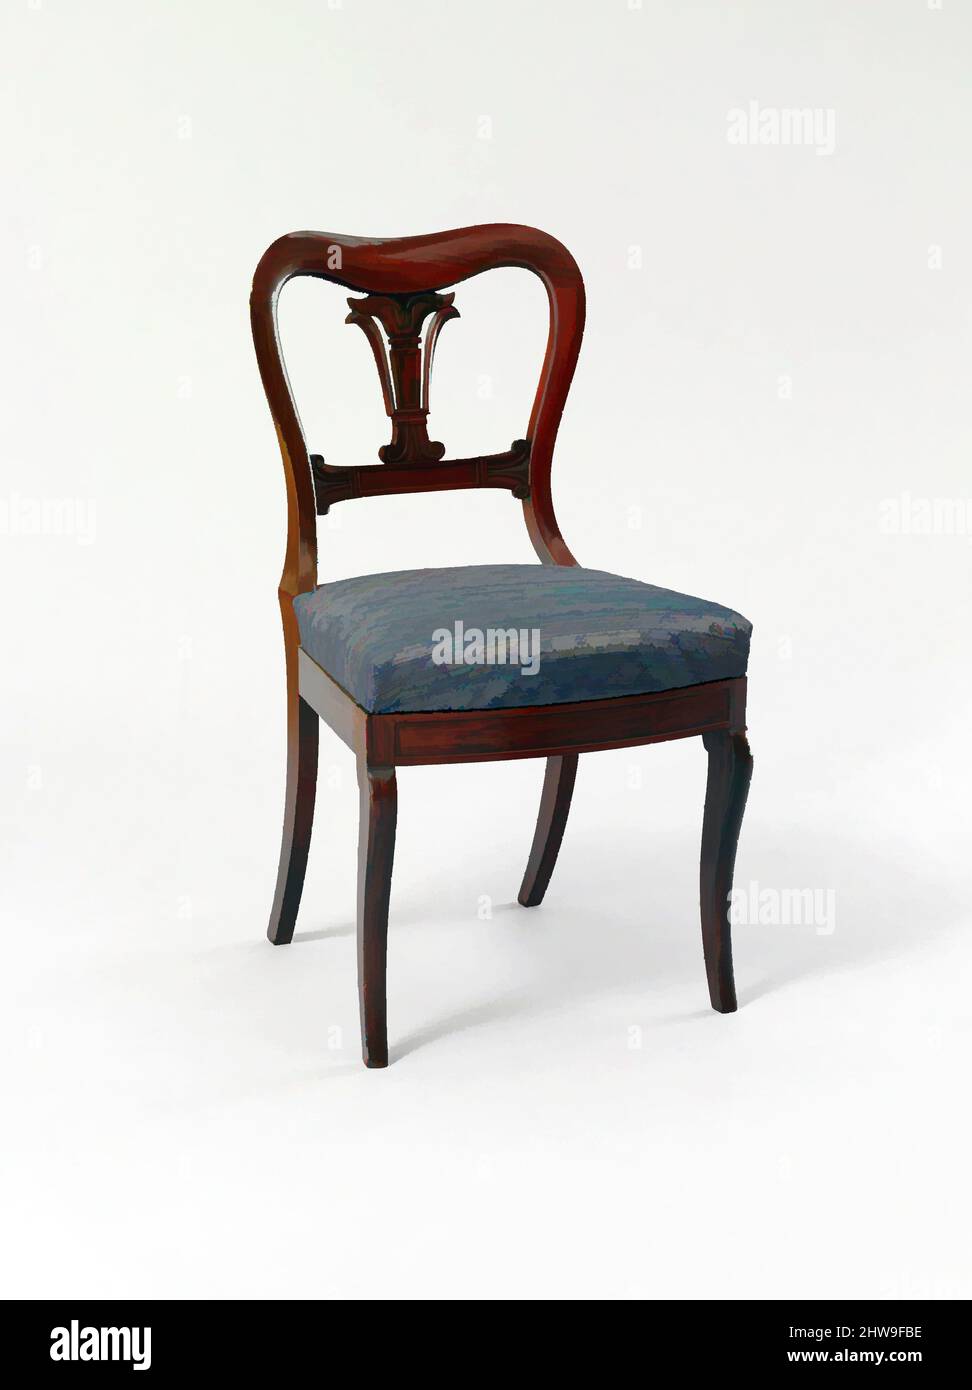 Kunst inspiriert von Side Chair, ca. 1830, hergestellt in New York, New York, USA, Amerikaner, Rosewood, Esche, 32 3/4 x 17 5/16 x 18 3/16 Zoll (83,2 x 44 x 46,2 cm), Möbel, möglicherweise aus der Werkstatt von Duncan Phyfe (1770–1854), Duncan Phyfe & Sons (1837–1840, aktives New York), AS, Classic Works modernisiert von Artotop mit einem Schuss Moderne. Formen, Farbe und Wert, auffällige visuelle Wirkung auf Kunst. Emotionen durch Freiheit von Kunstwerken auf zeitgemäße Weise. Eine zeitlose Botschaft, die eine wild kreative neue Richtung verfolgt. Künstler, die sich dem digitalen Medium zuwenden und die Artotop NFT erschaffen Stockfoto